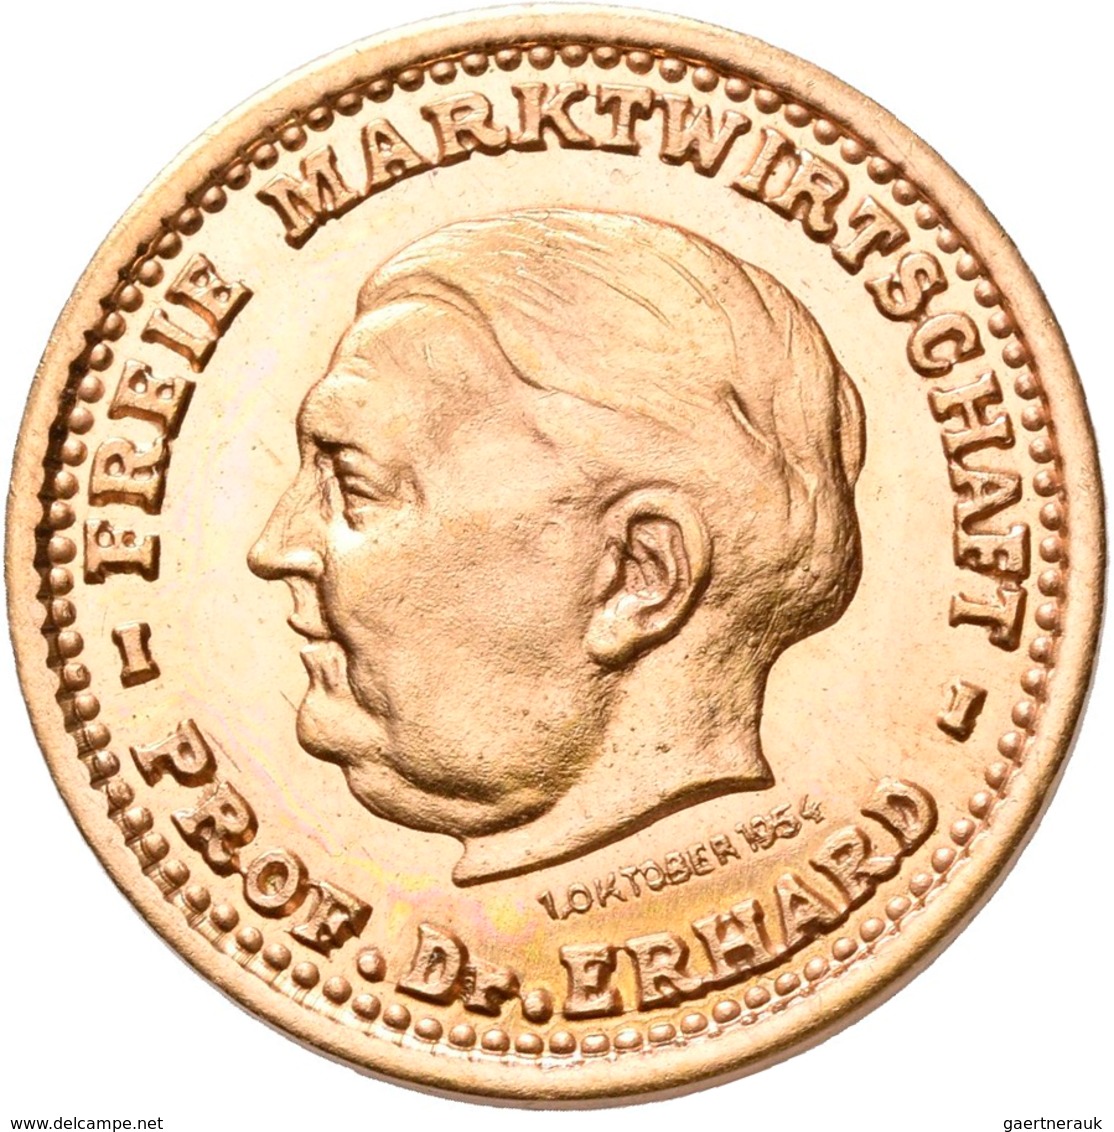 Medaillen Deutschland: BRD: Lot 6 Goldmedaillen; 2 x Konrad Adenauer 1957, Gold 900/1000, 22,5 mm, j